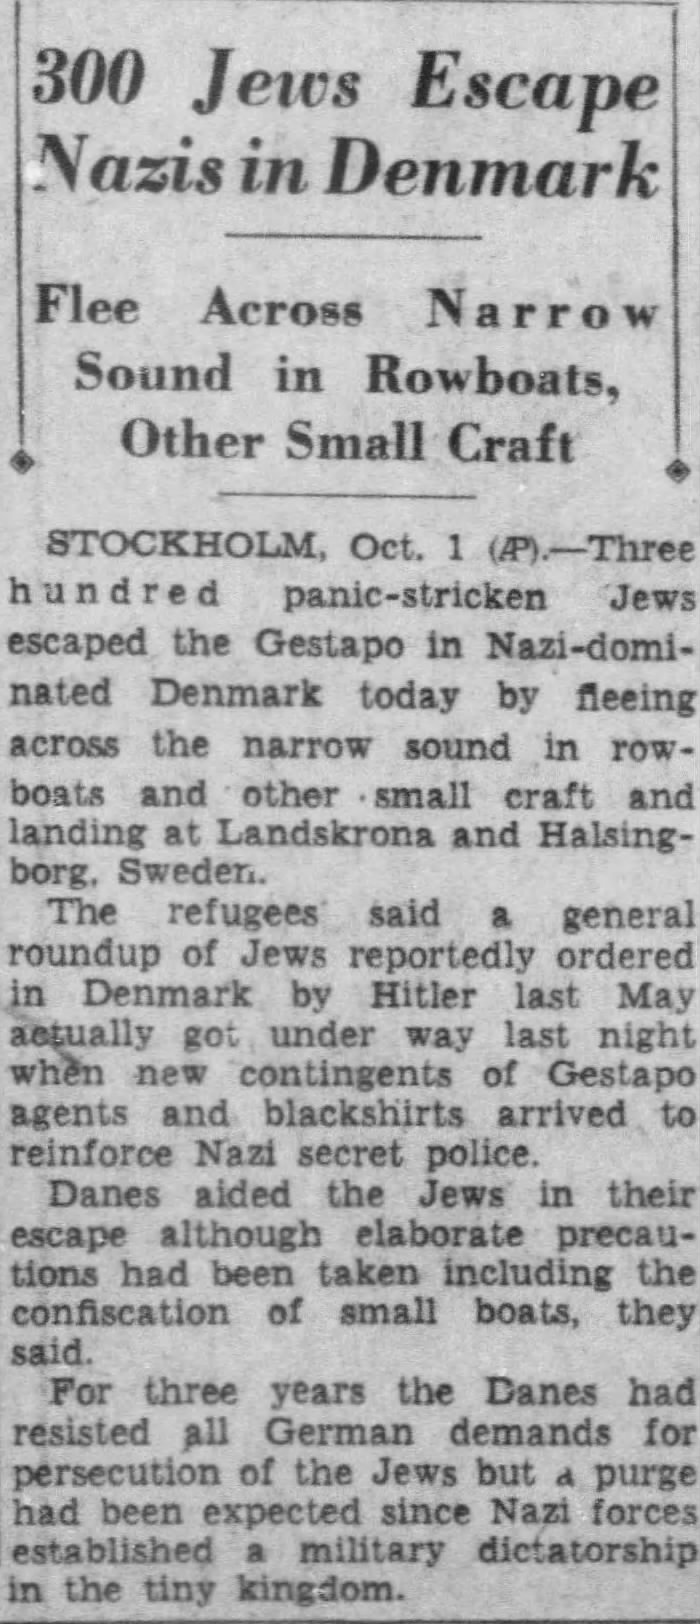 300 Jews Escape Nazis in Denmark